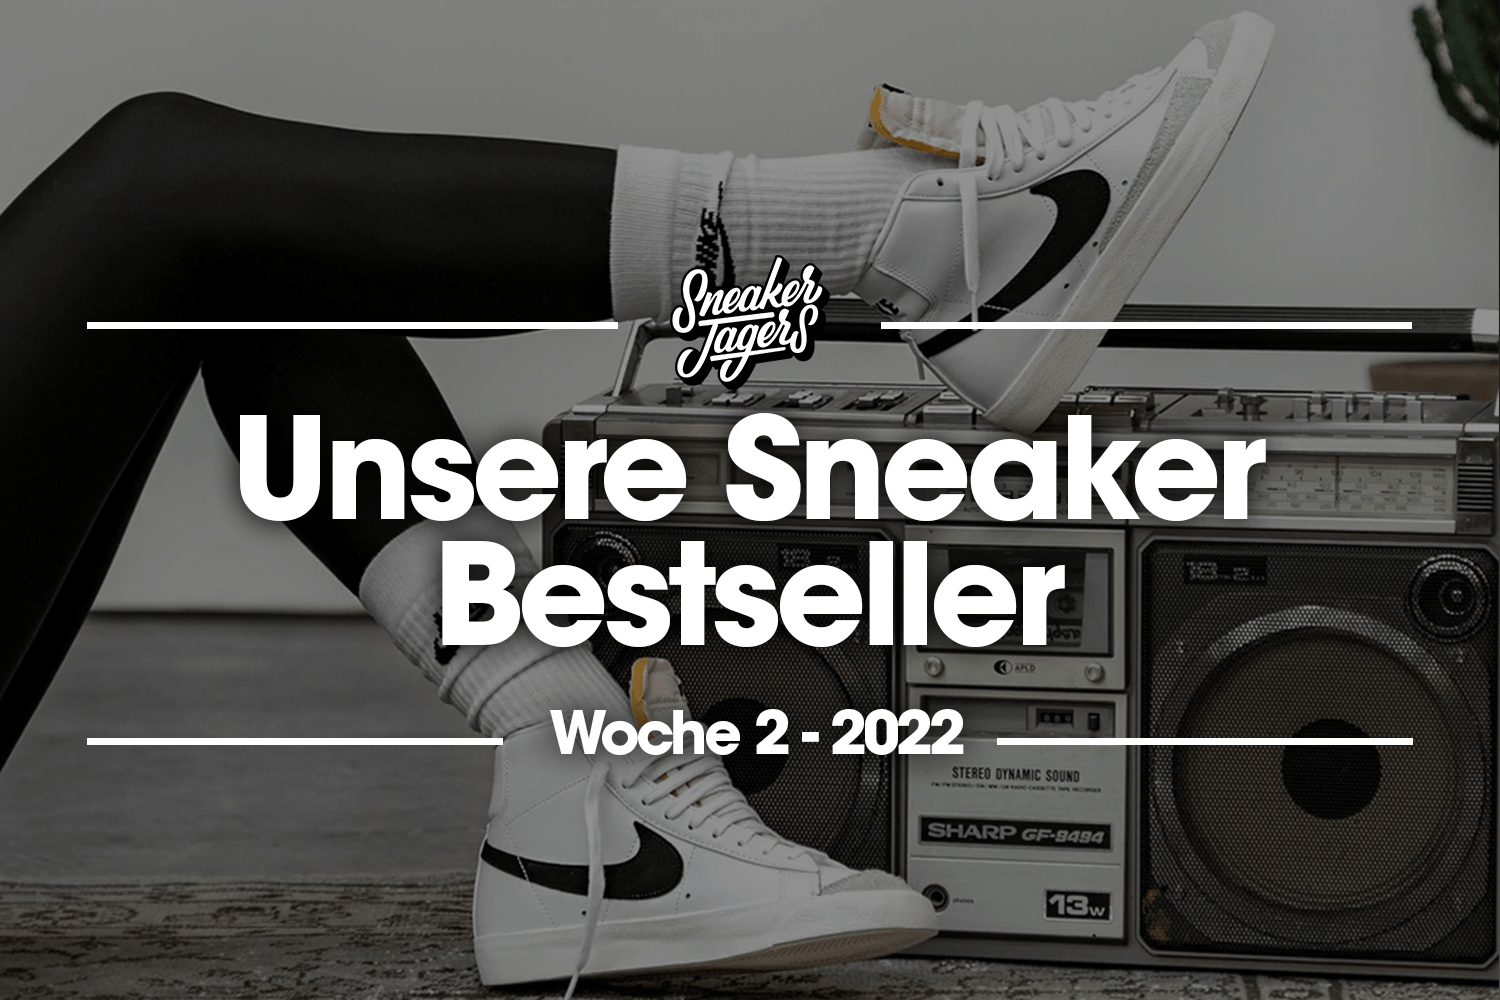 Unsere Sneaker Bestseller - Woche 2 - Das ist im Trend